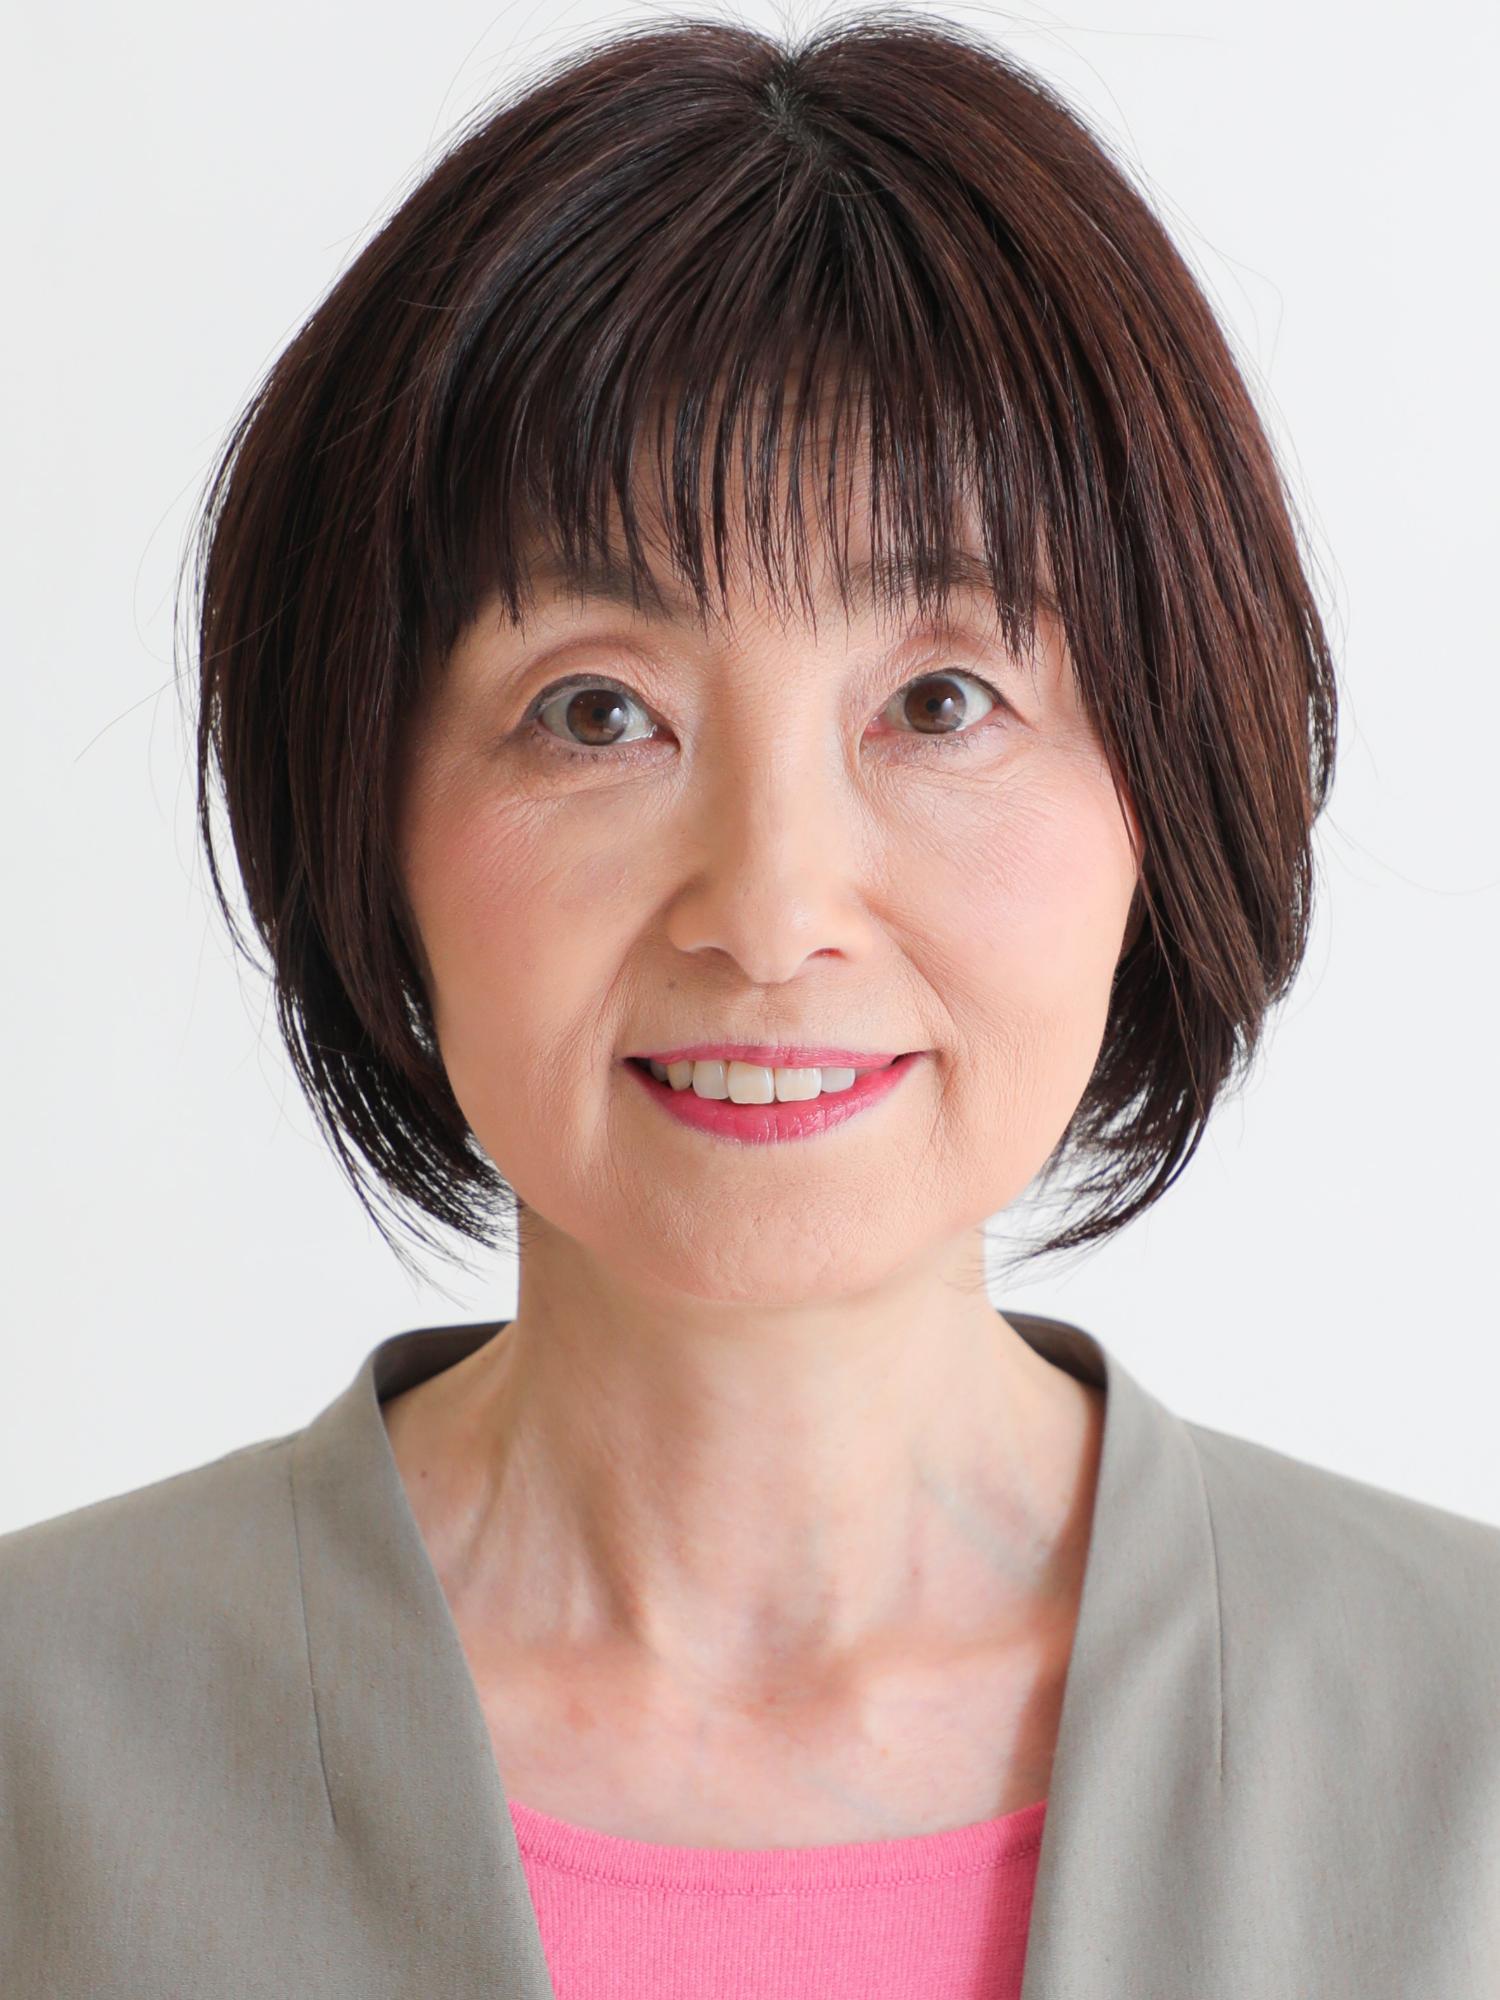 山田由紀子議員の顔写真